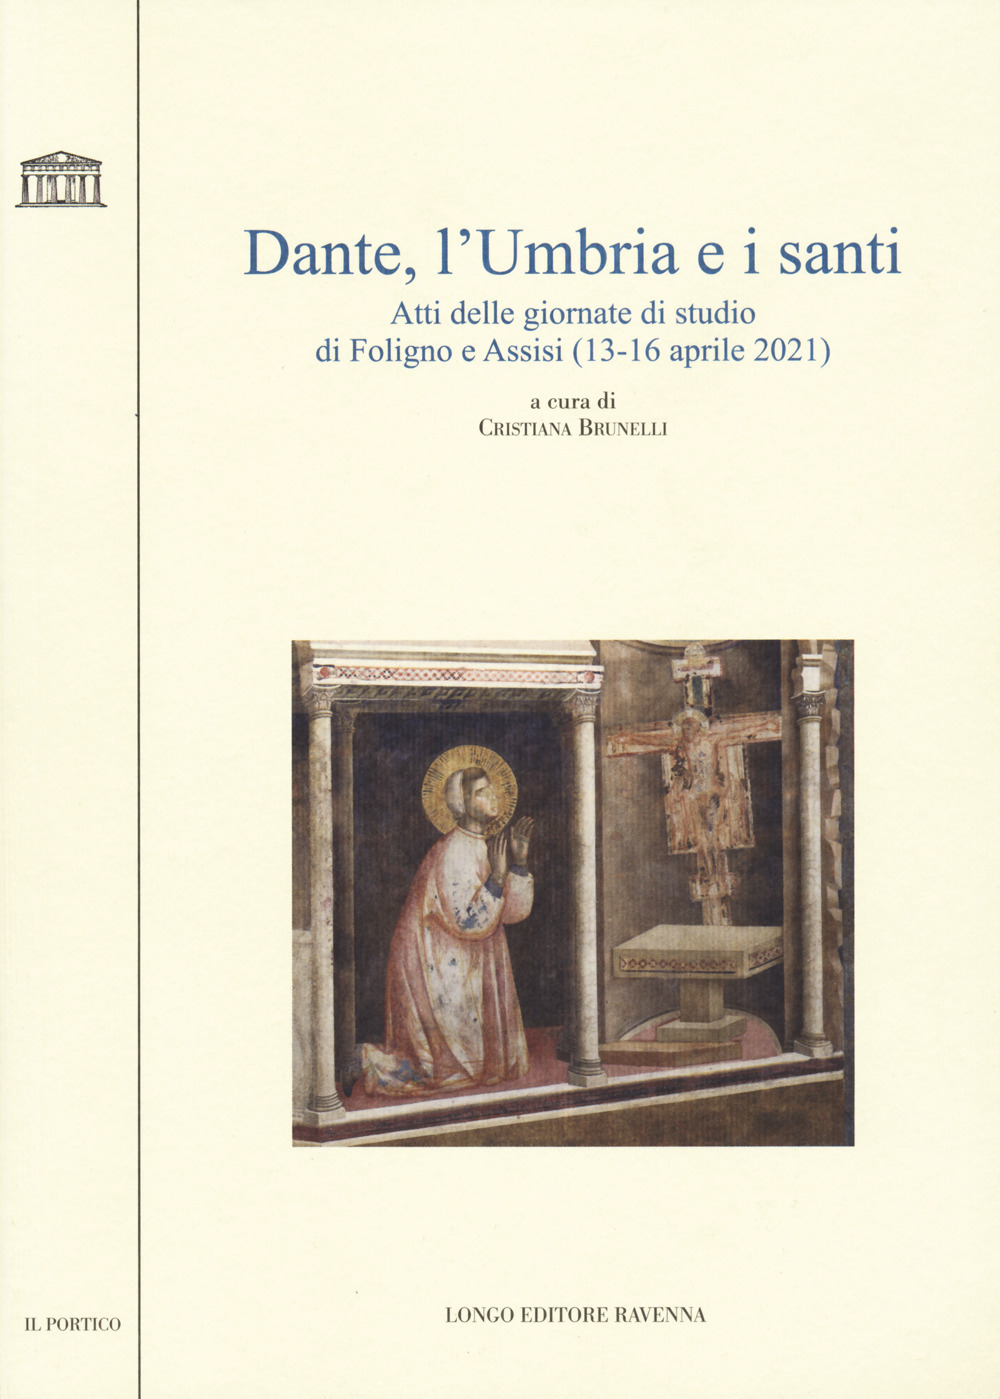 Dante, l'Umbria e i santi. Atti delle giornate di studio di Foligno e Assisi (13-16 aprile 2021)